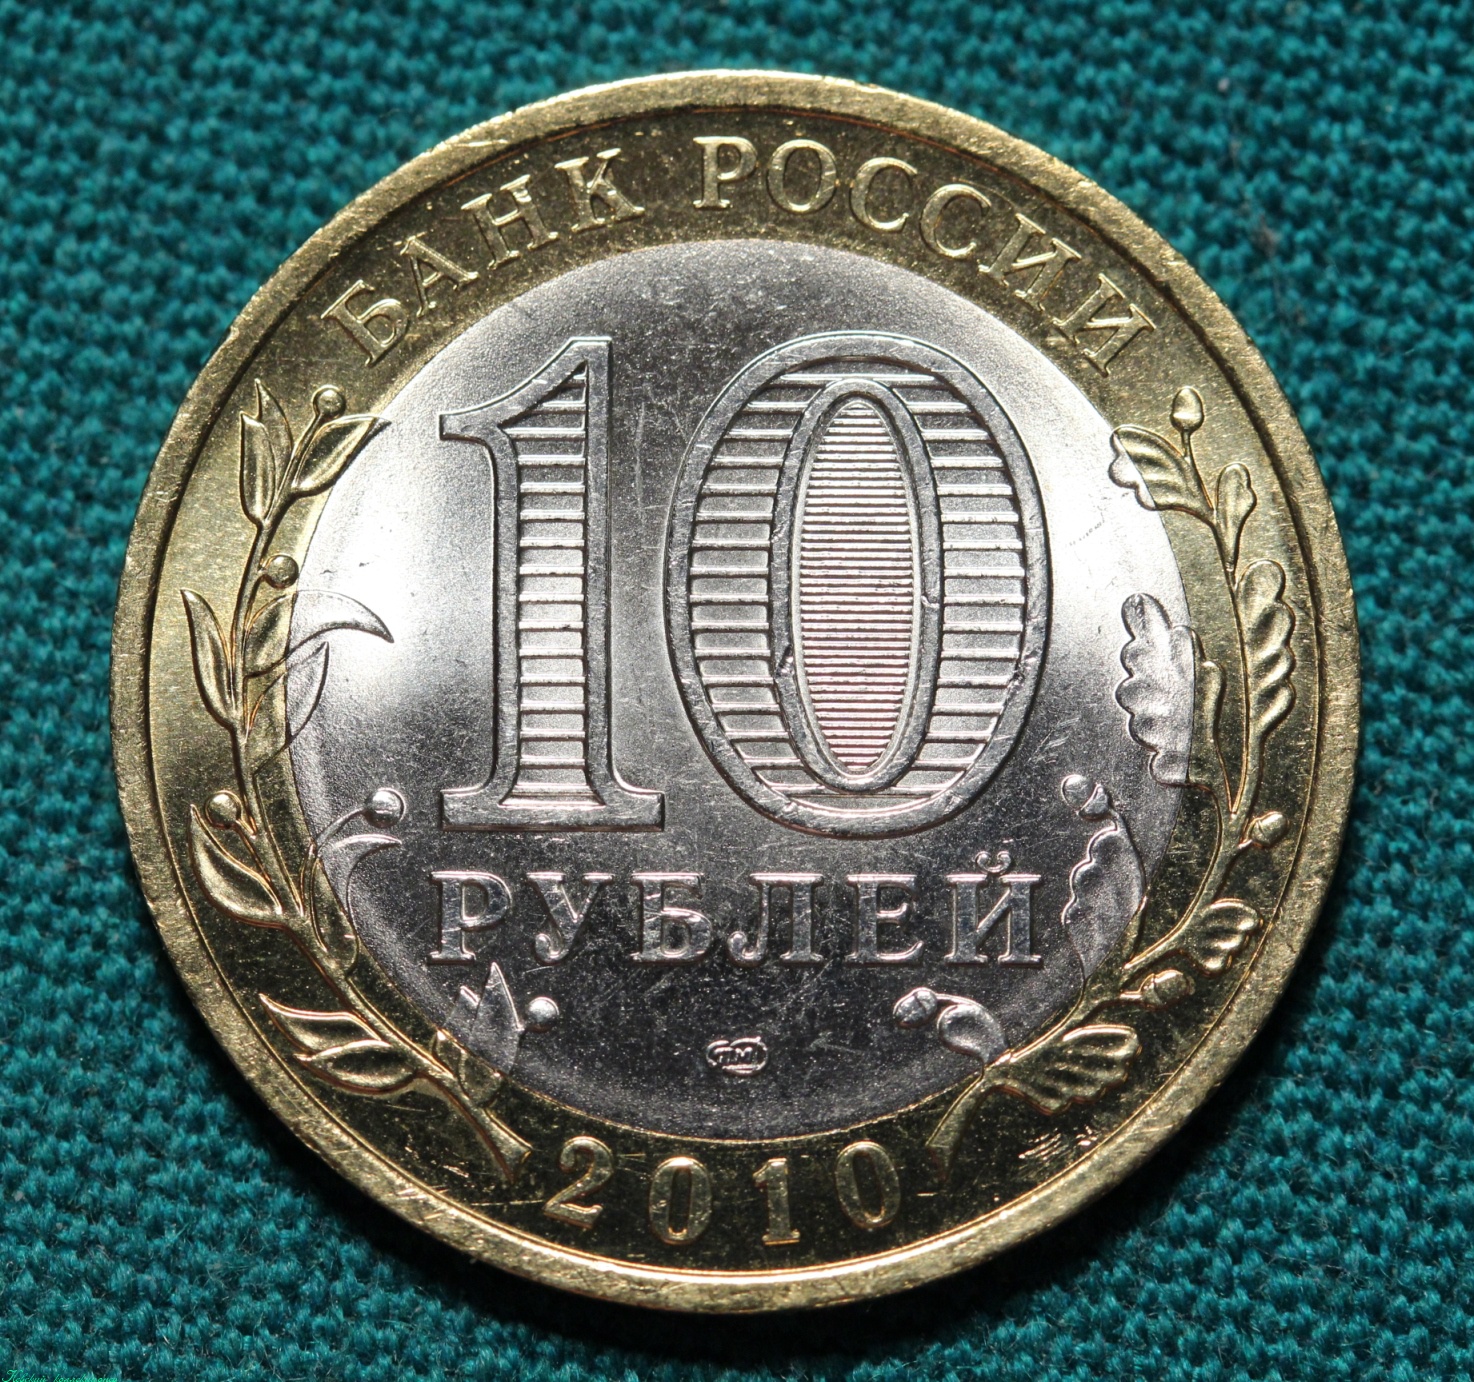 10 Рублей Ненецкий автономный округ 2010